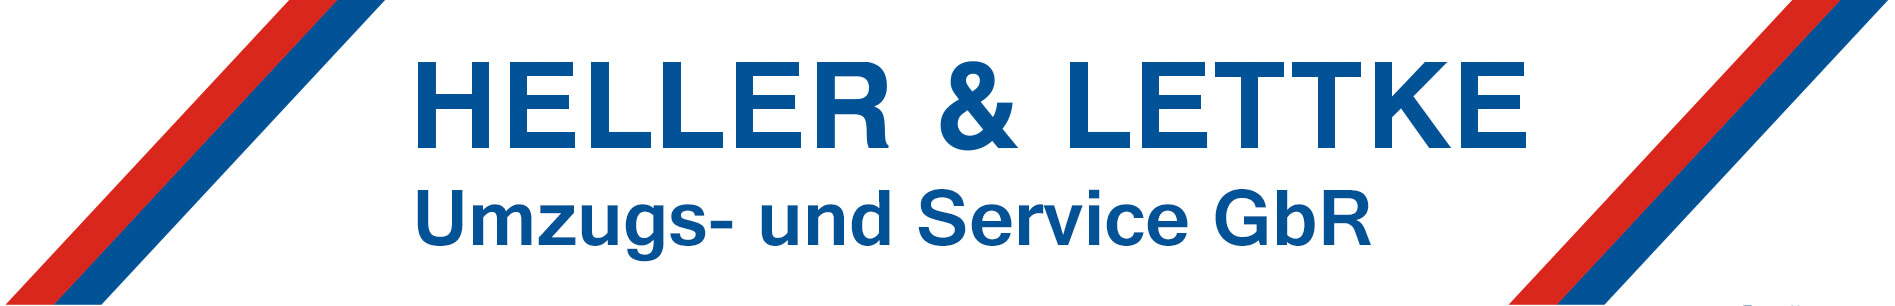 Heller & Lettke Umzugs- und Service GmbH